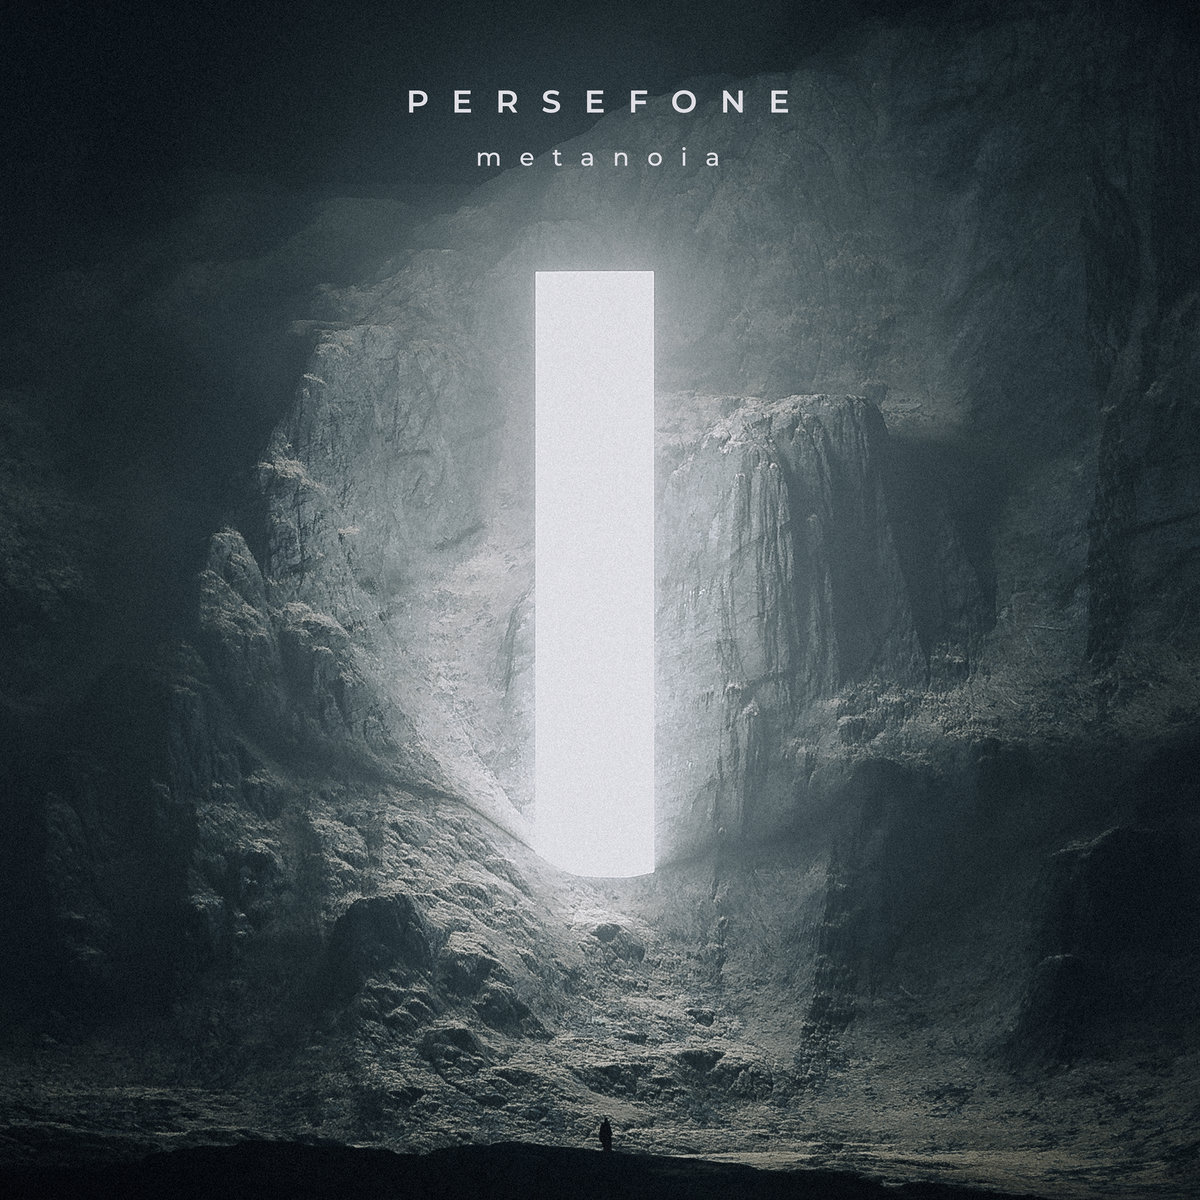 Persefone – metanoia